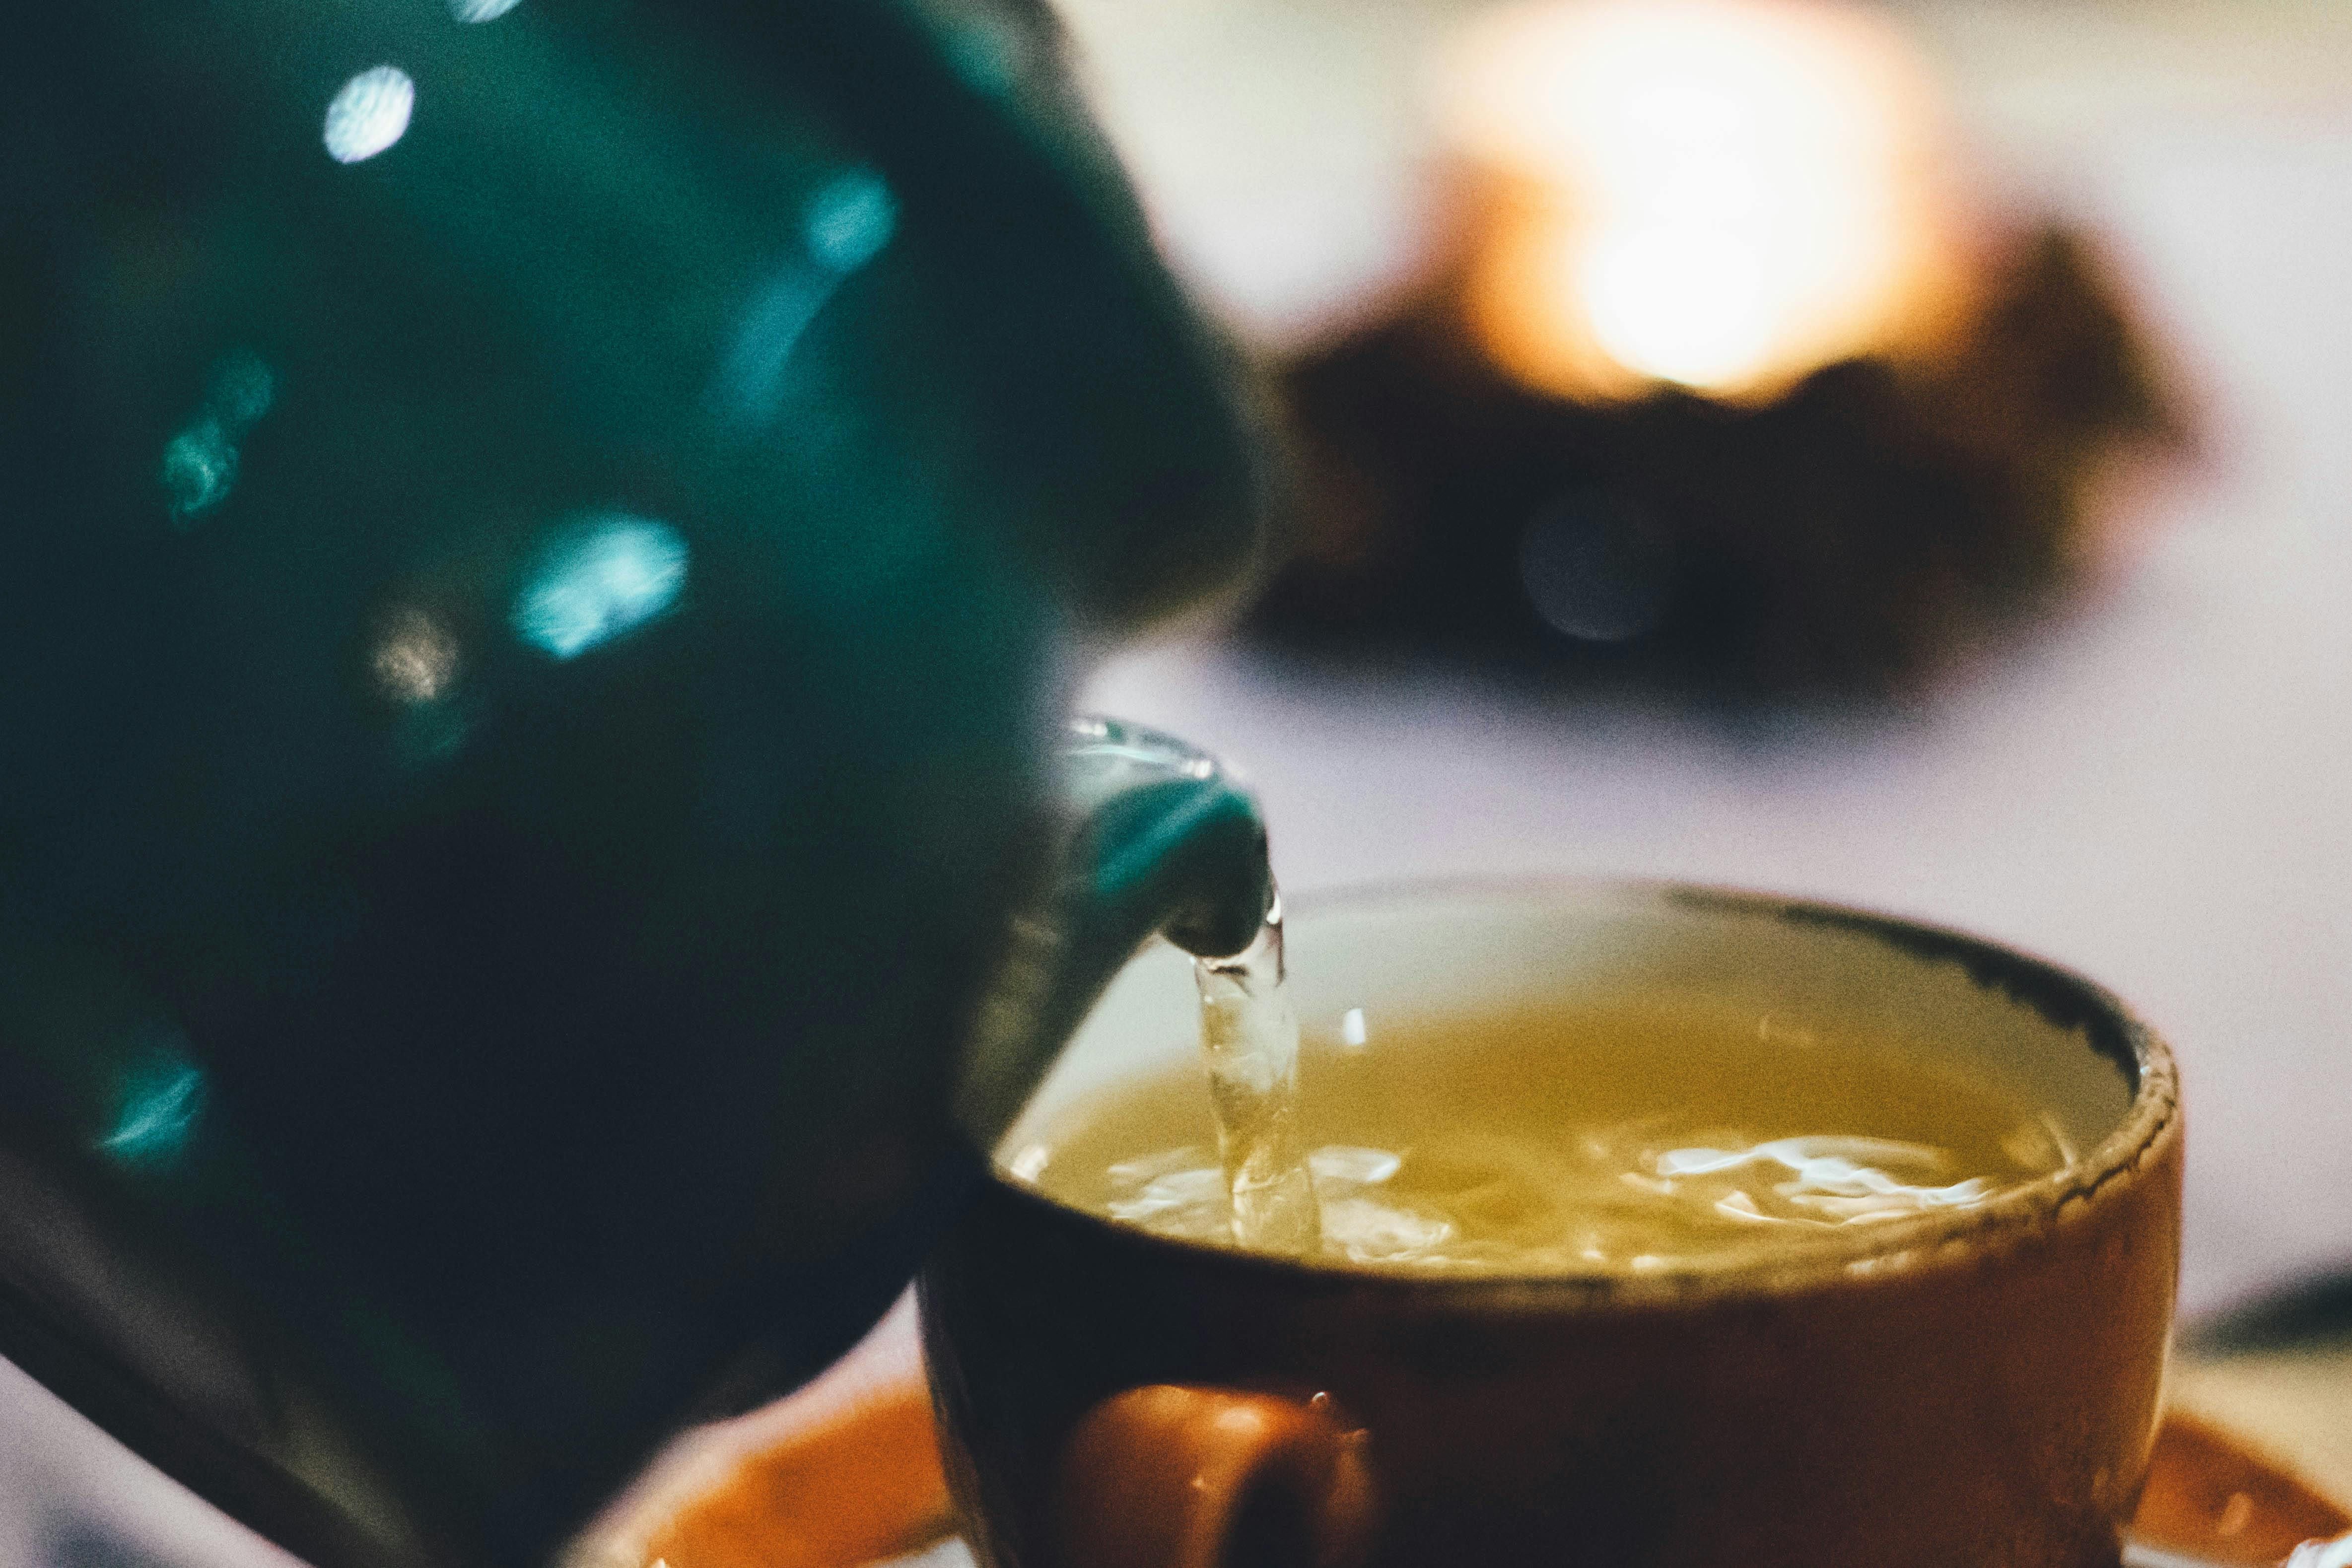 Tomar en exceso té de eucalipto podría resultar contraproducente para la salud. (Foto: Pexels)